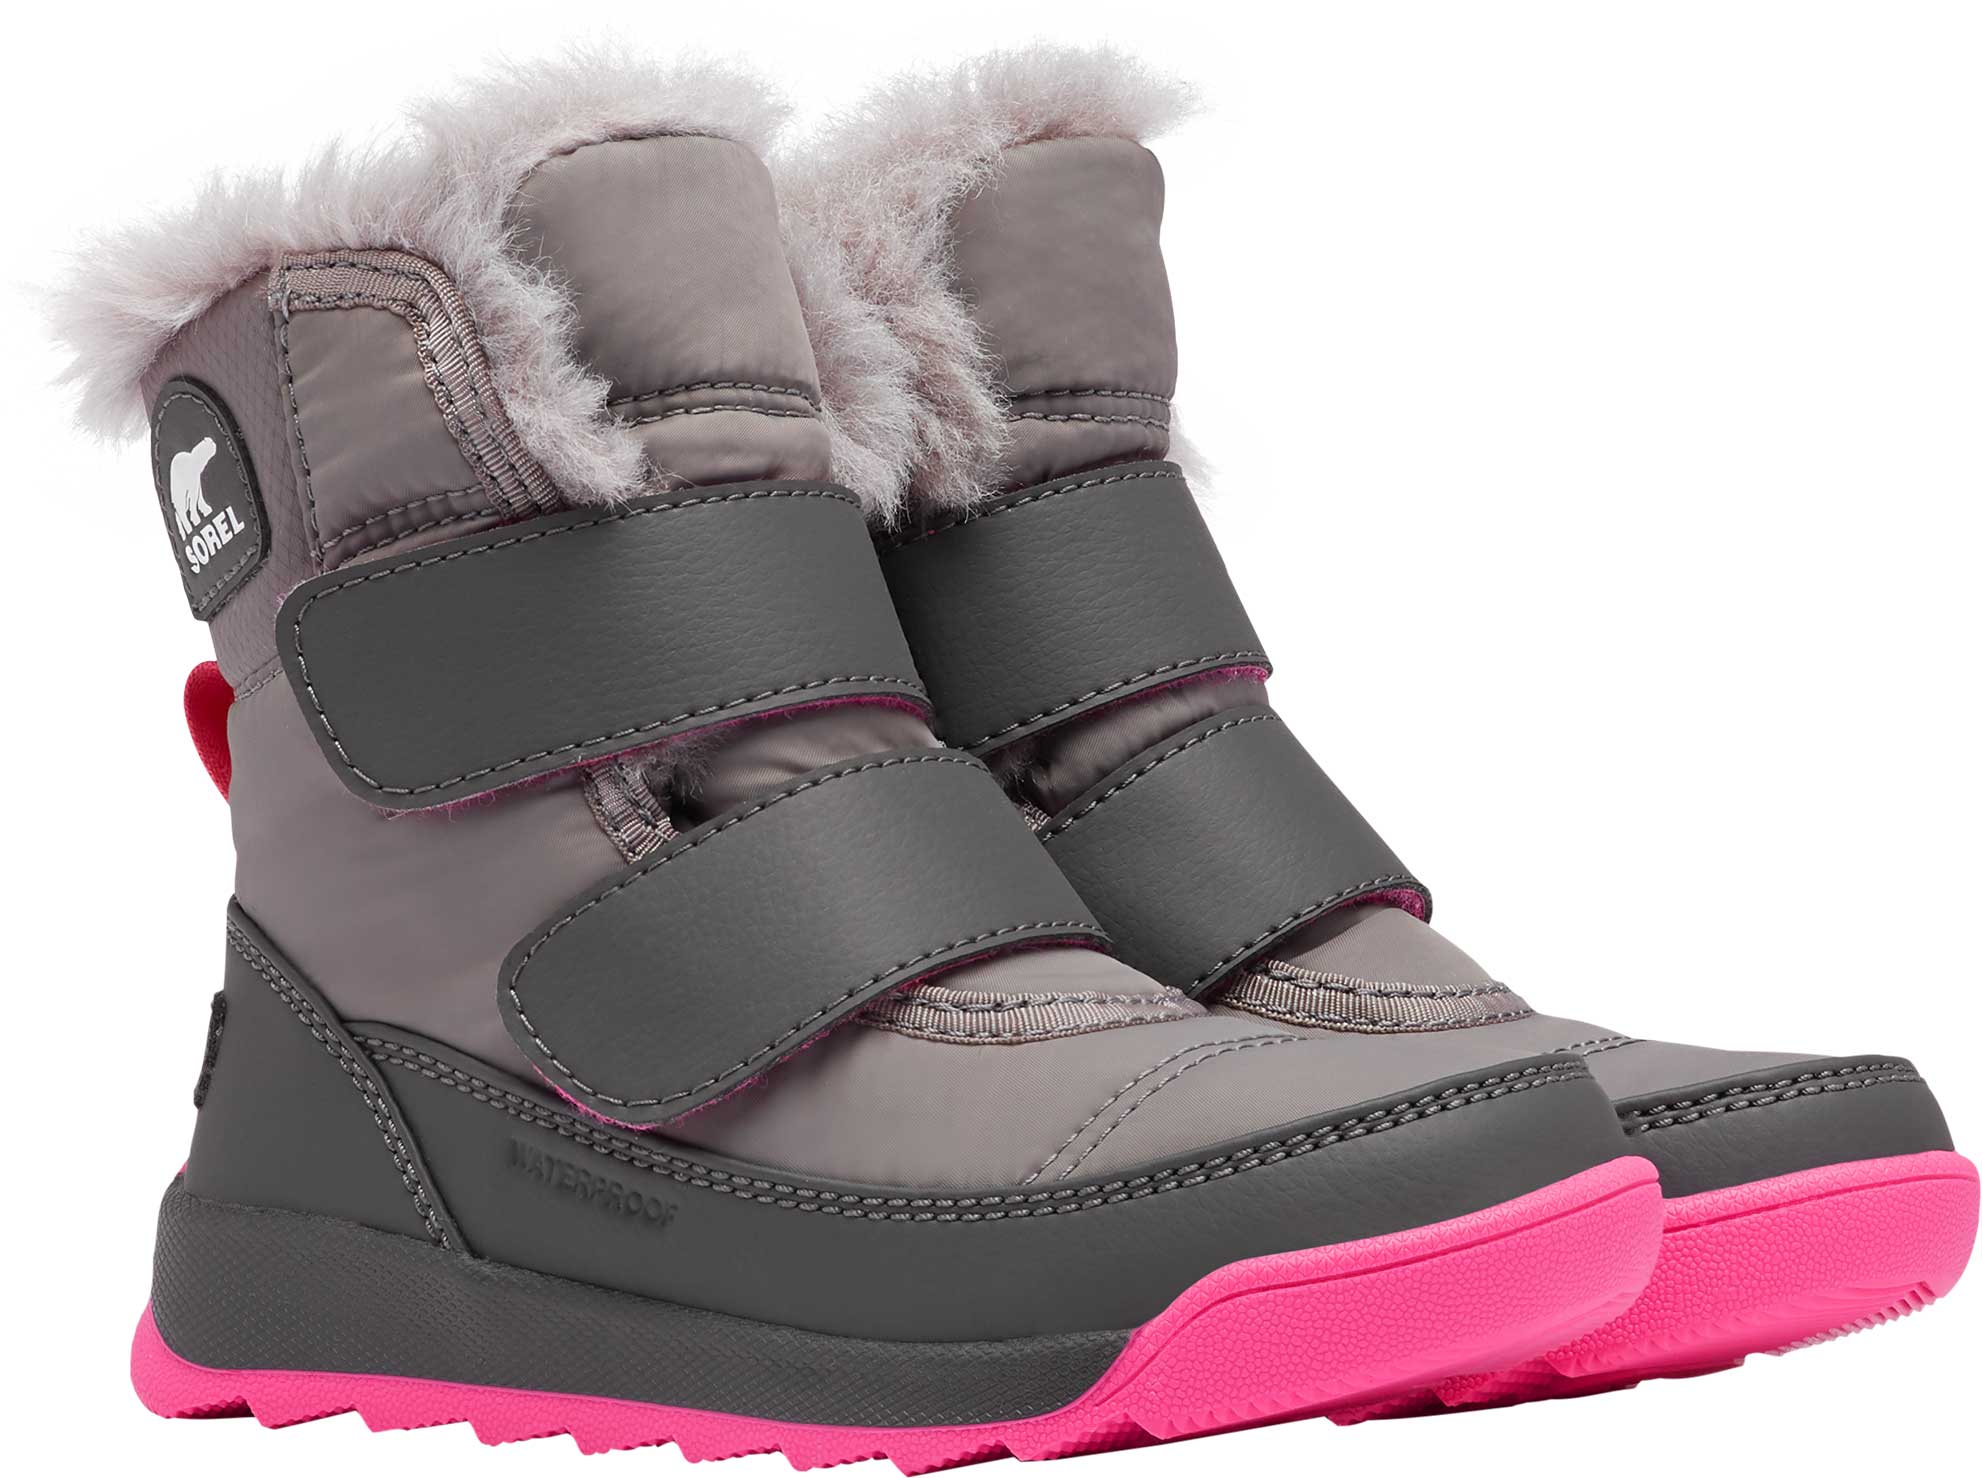 Kids’ unisex winter footwear